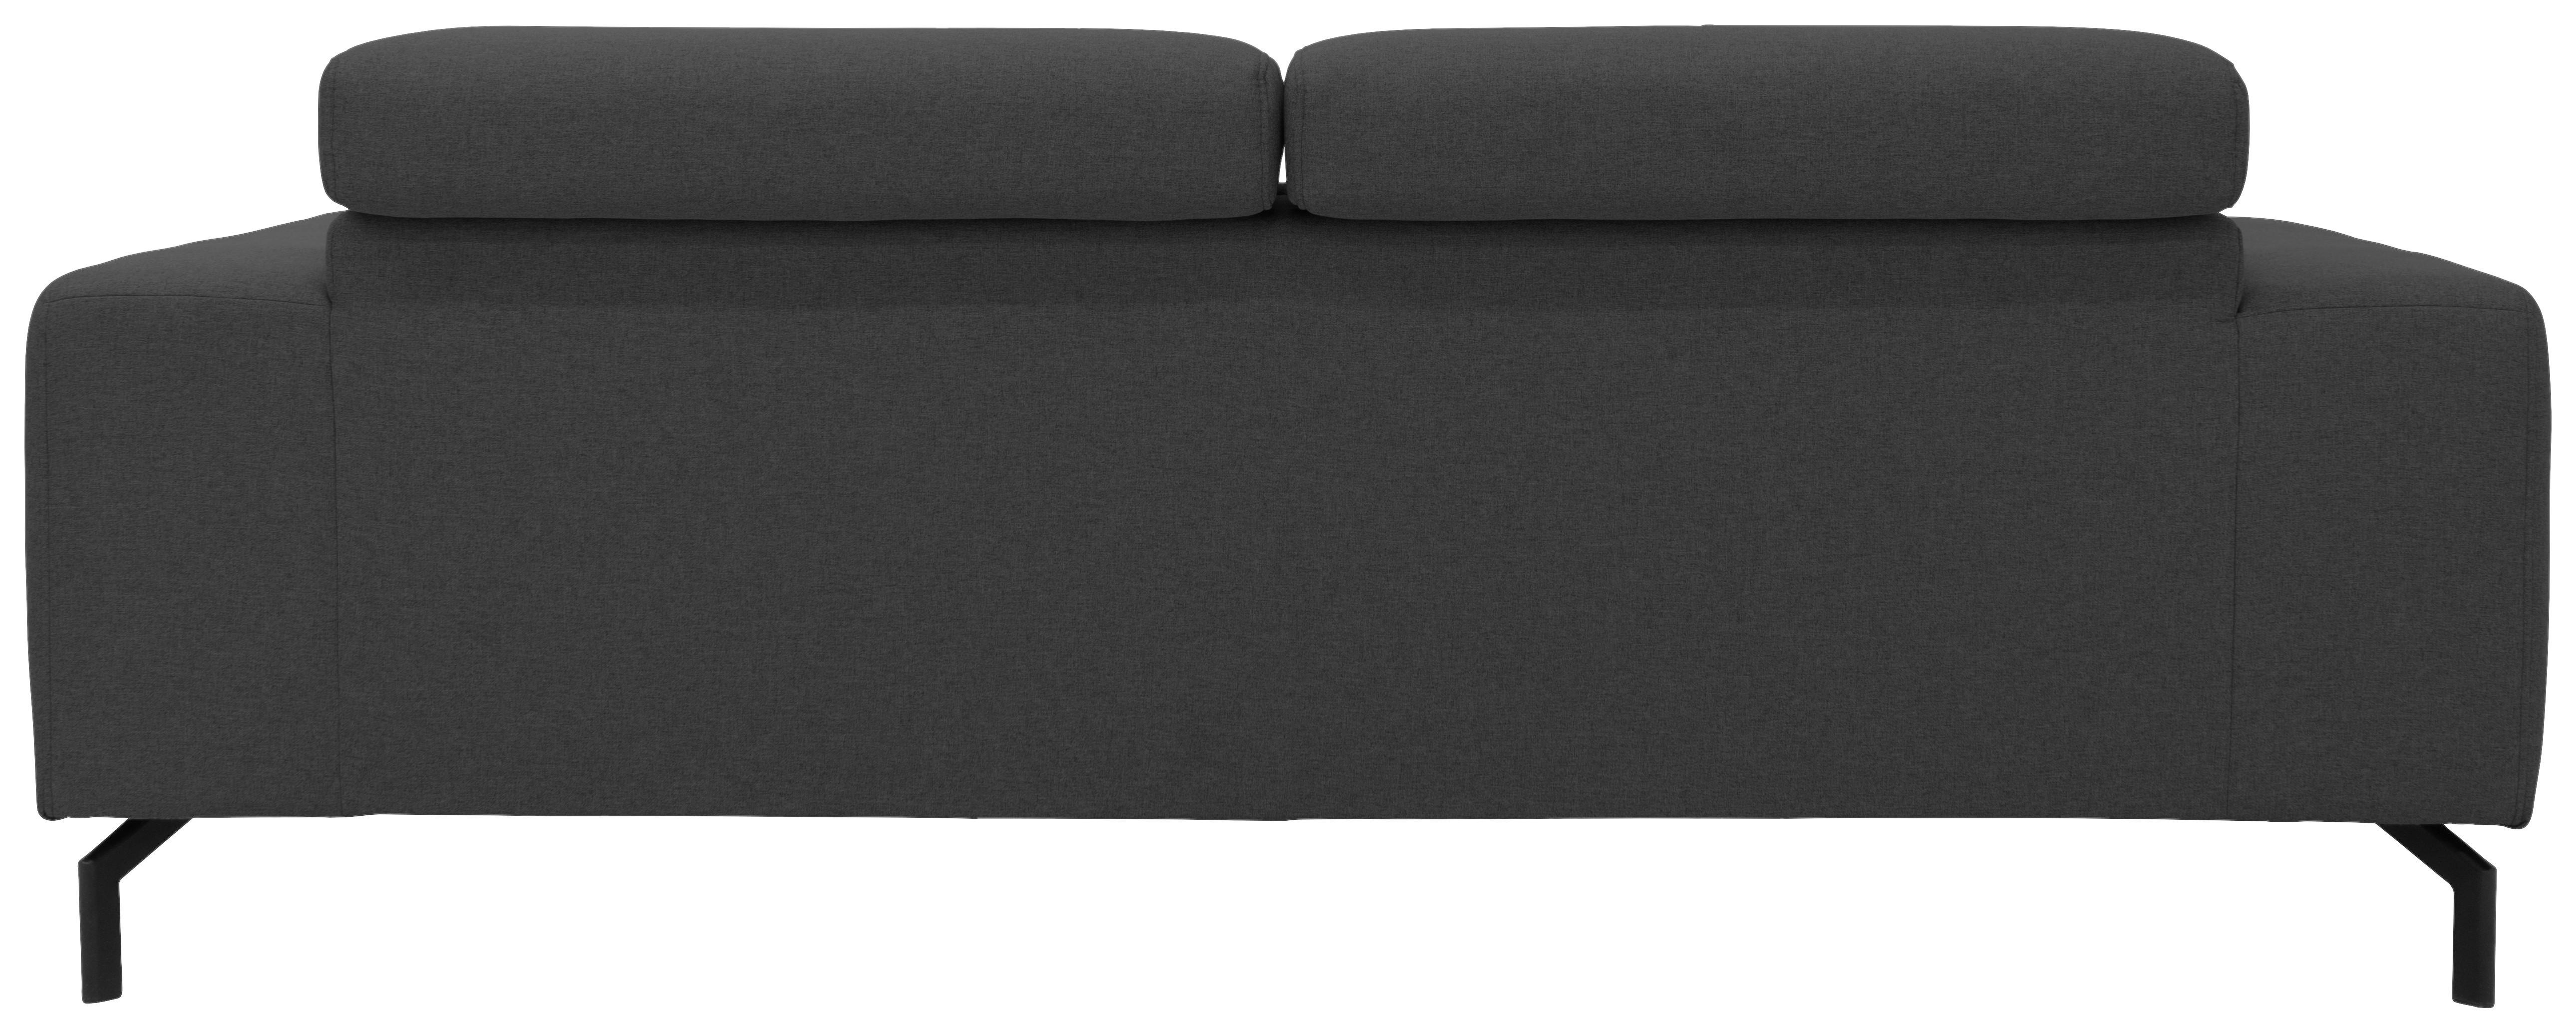 2-Sitzer-Sofa Cunelli Grau Webstoff - Schwarz/Grau, Design, Textil (208/79/104cm)